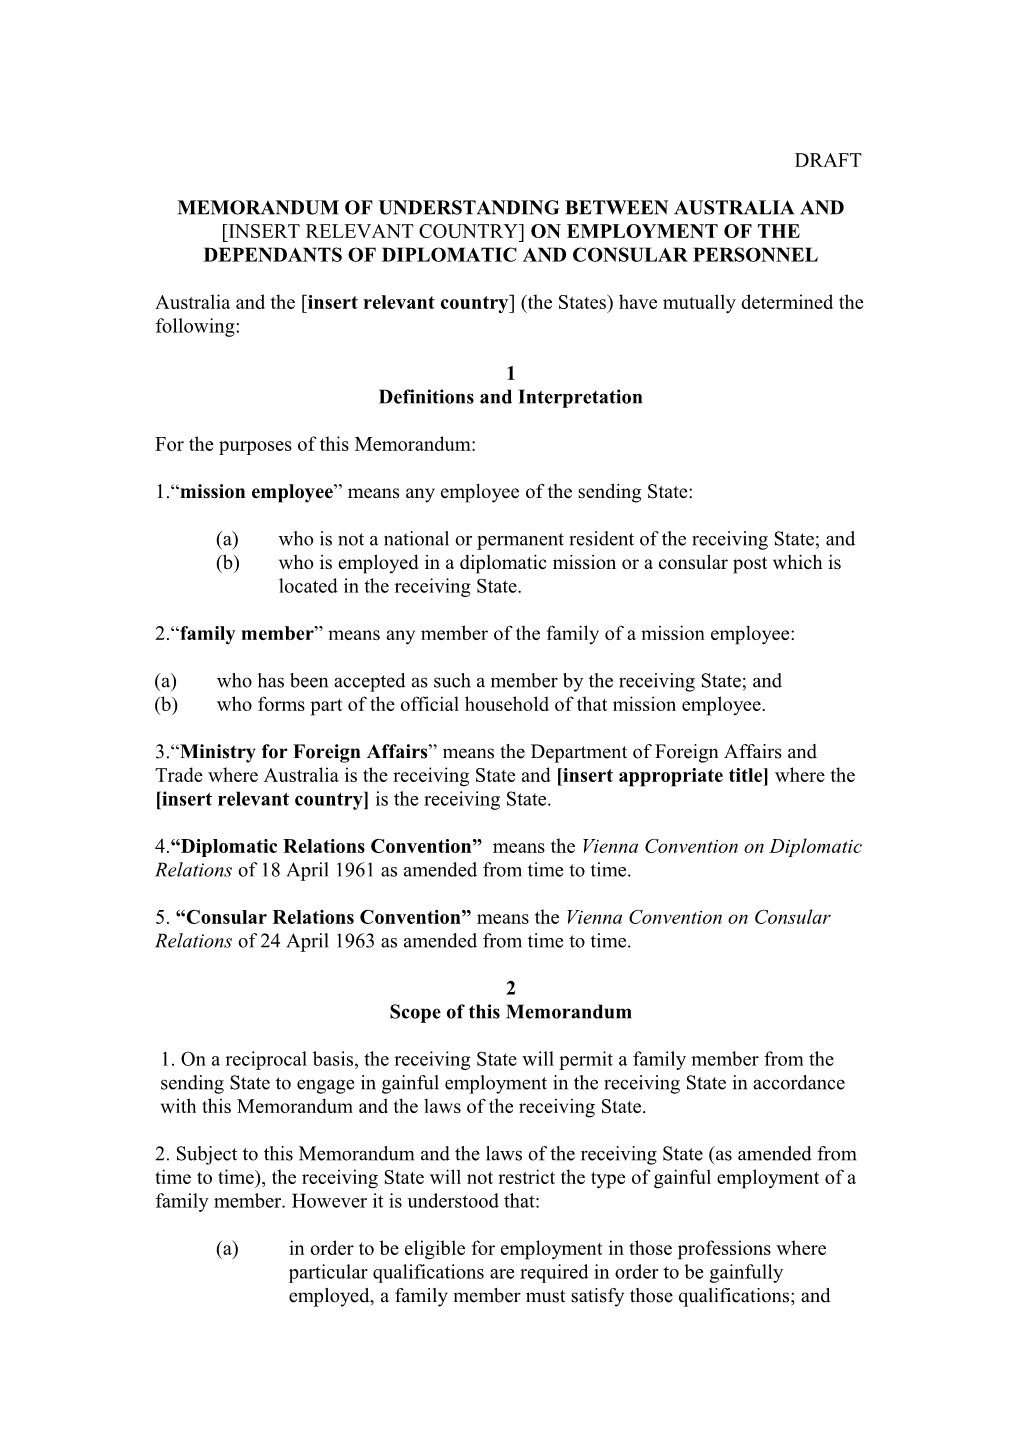 Memorandum of Understanding Between Australia and Insert Relevant Country on Employment